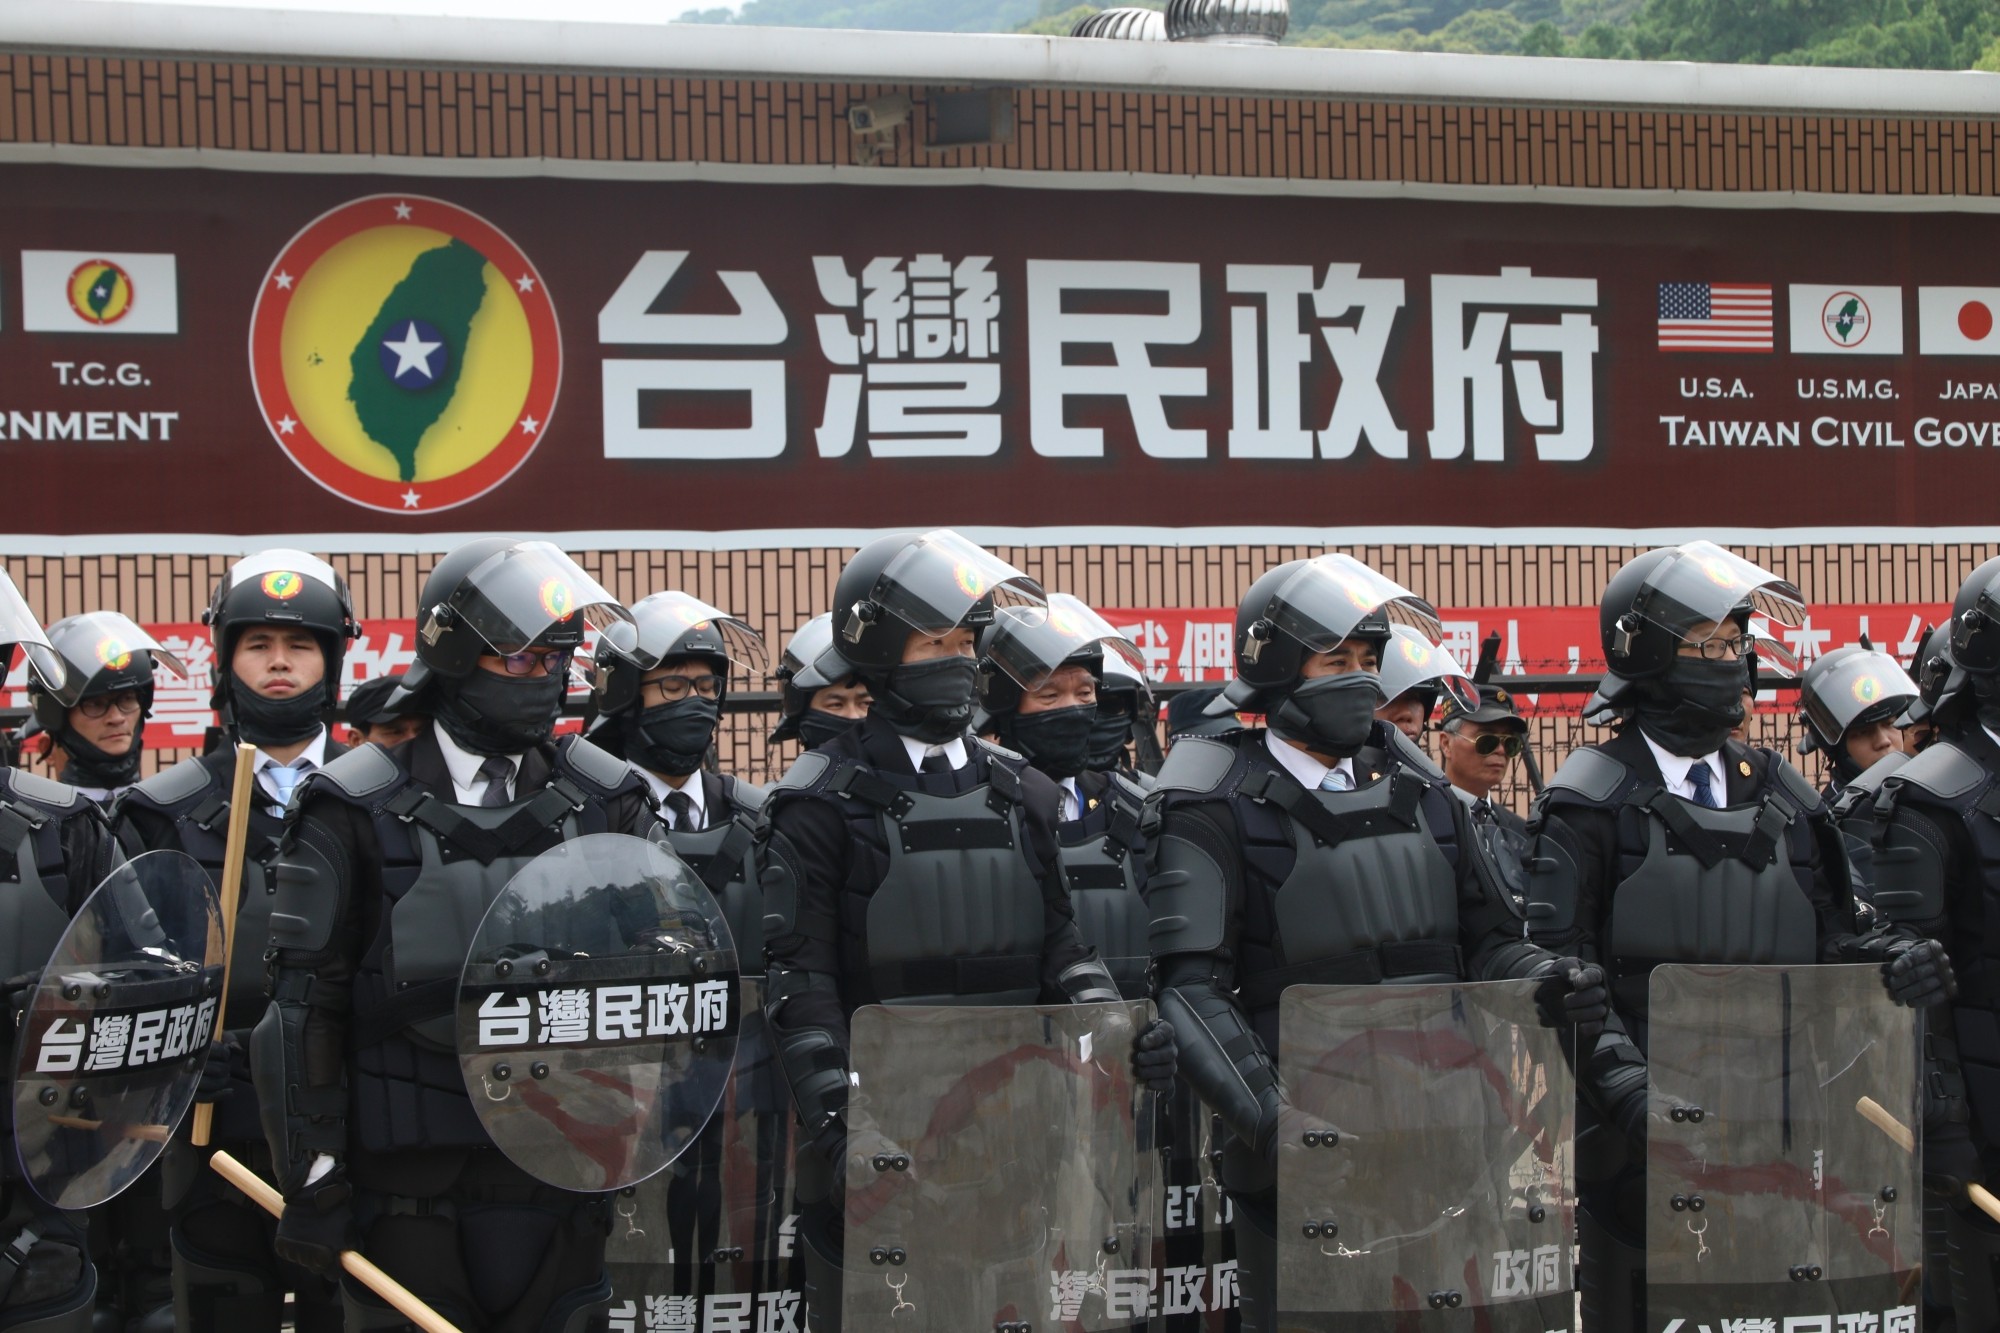 圖https://cdn2.ettoday.net/images/3279/3279624.jpg, 蔡英文為何把台灣民政府弄到黑熊部隊解散?